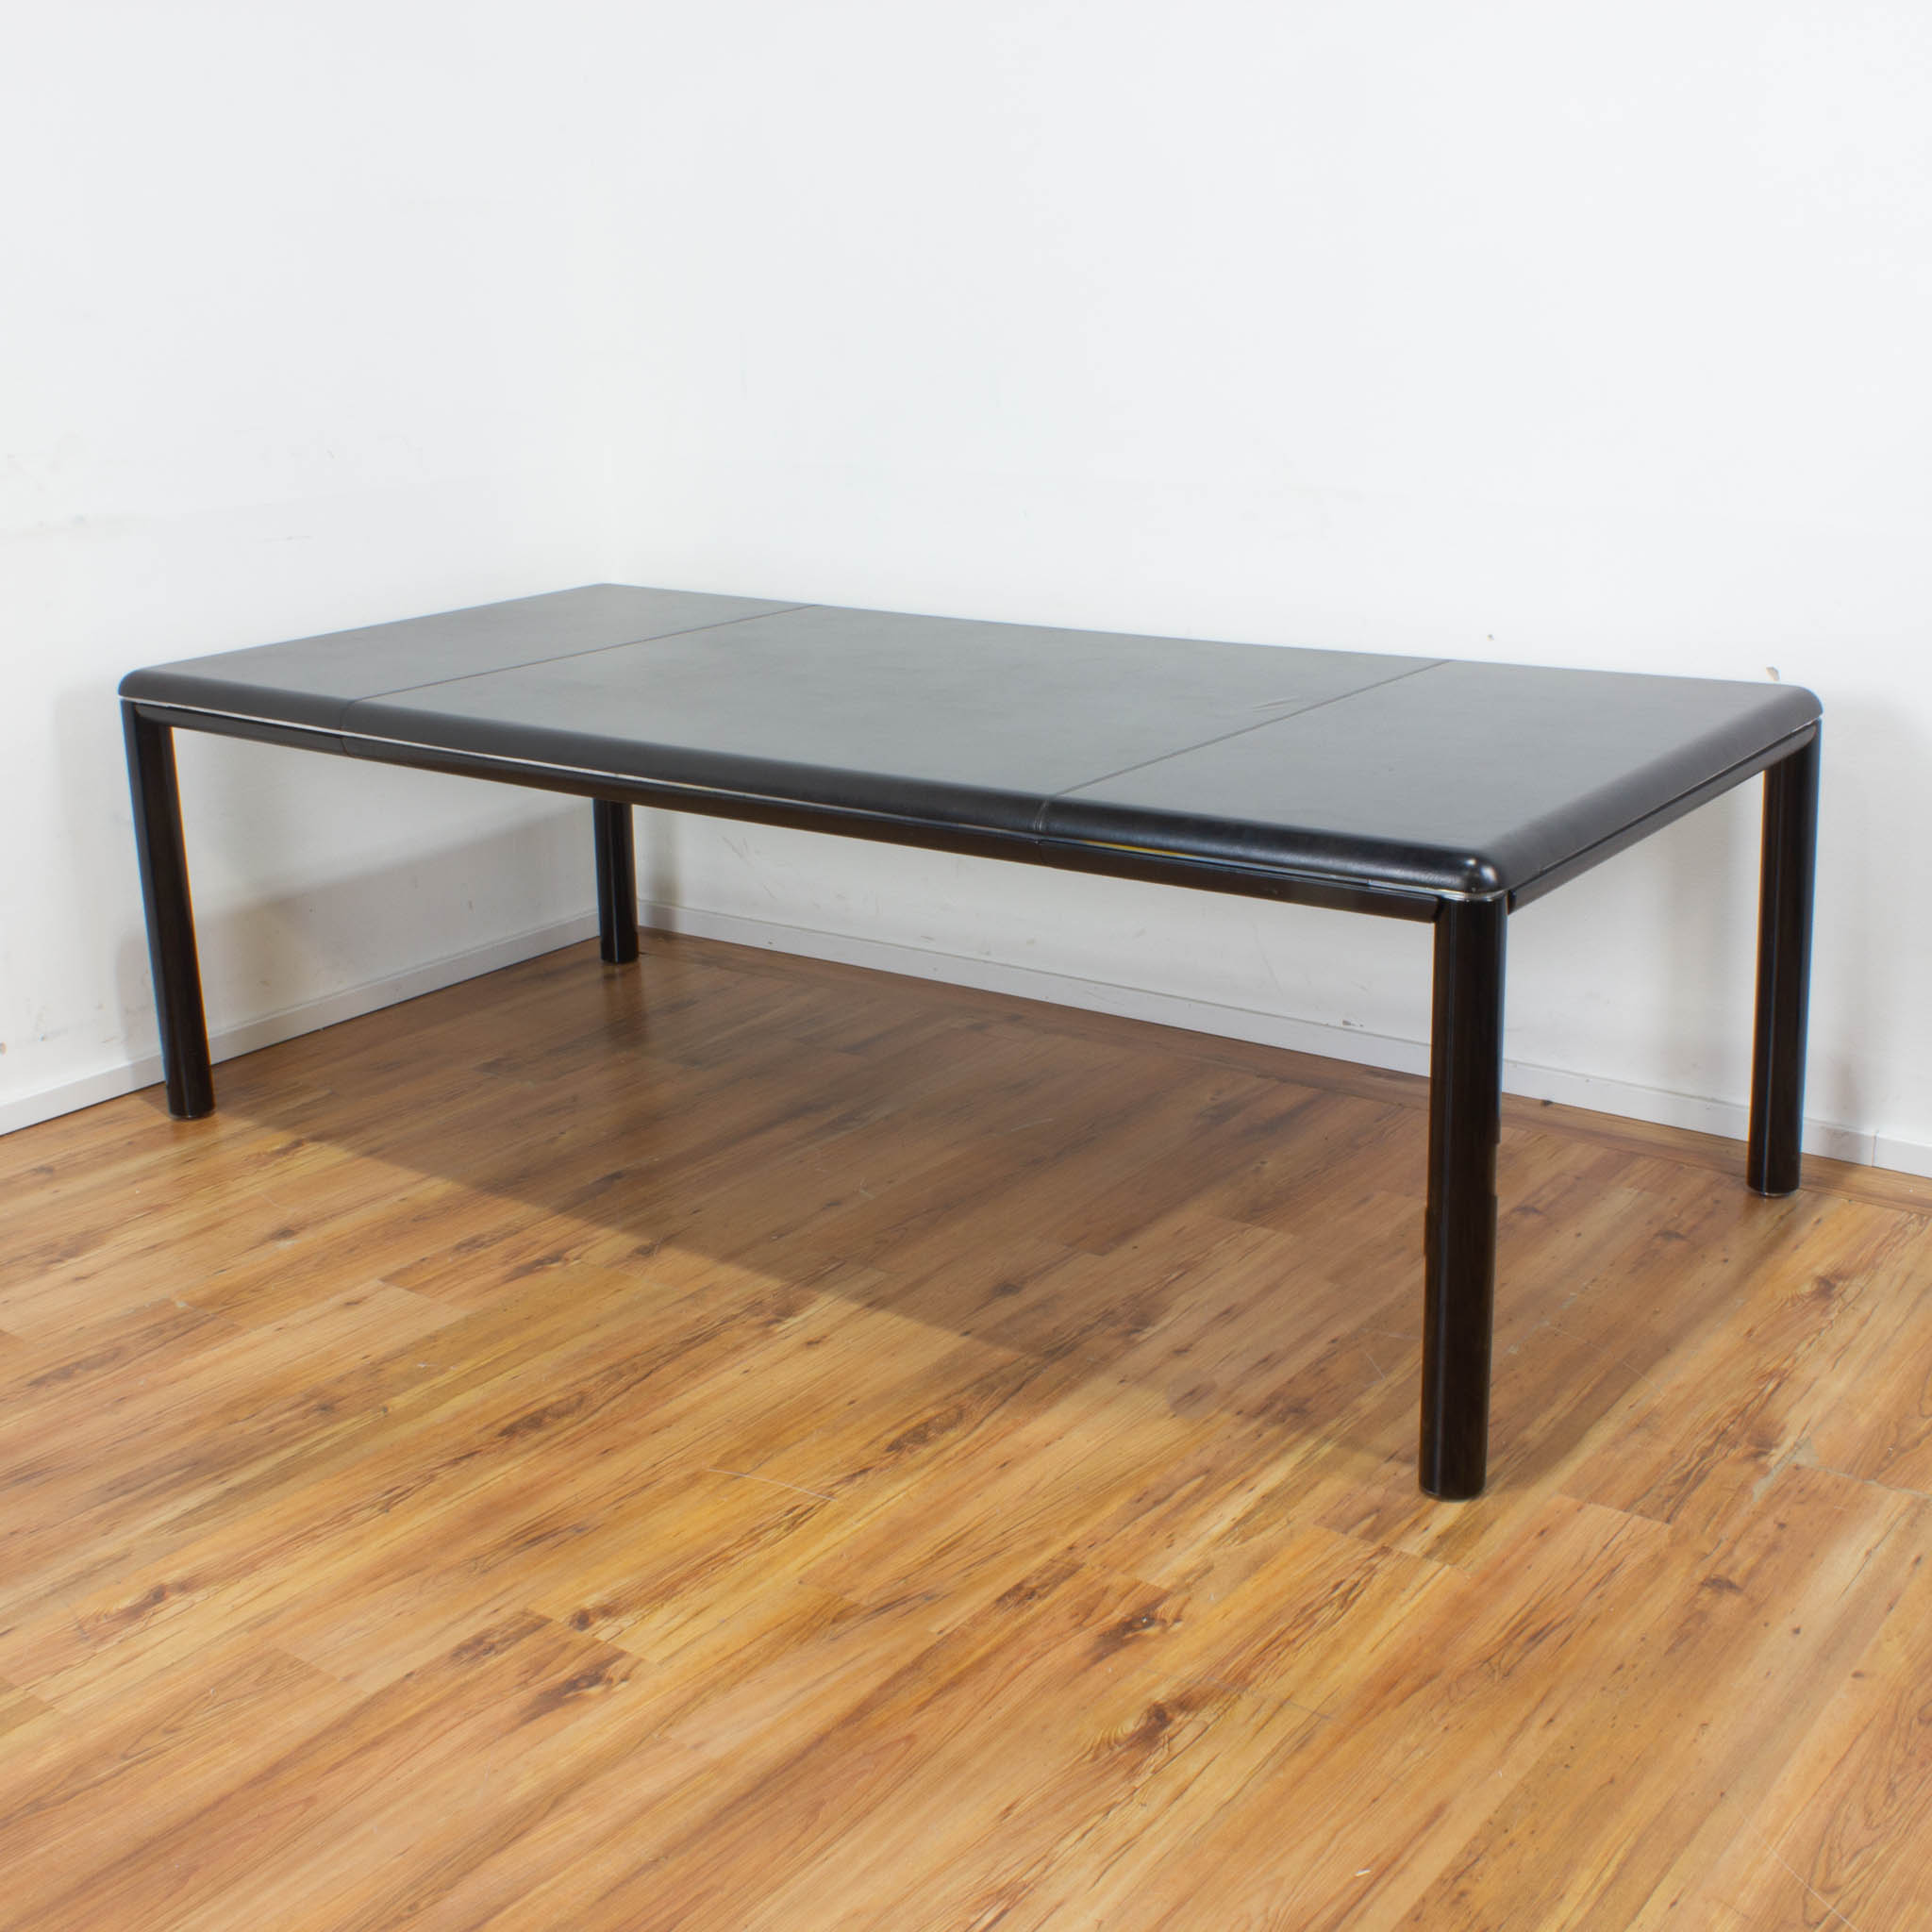 Knoll Konferenztisch - Leder schwarz - 225 x 110 cm